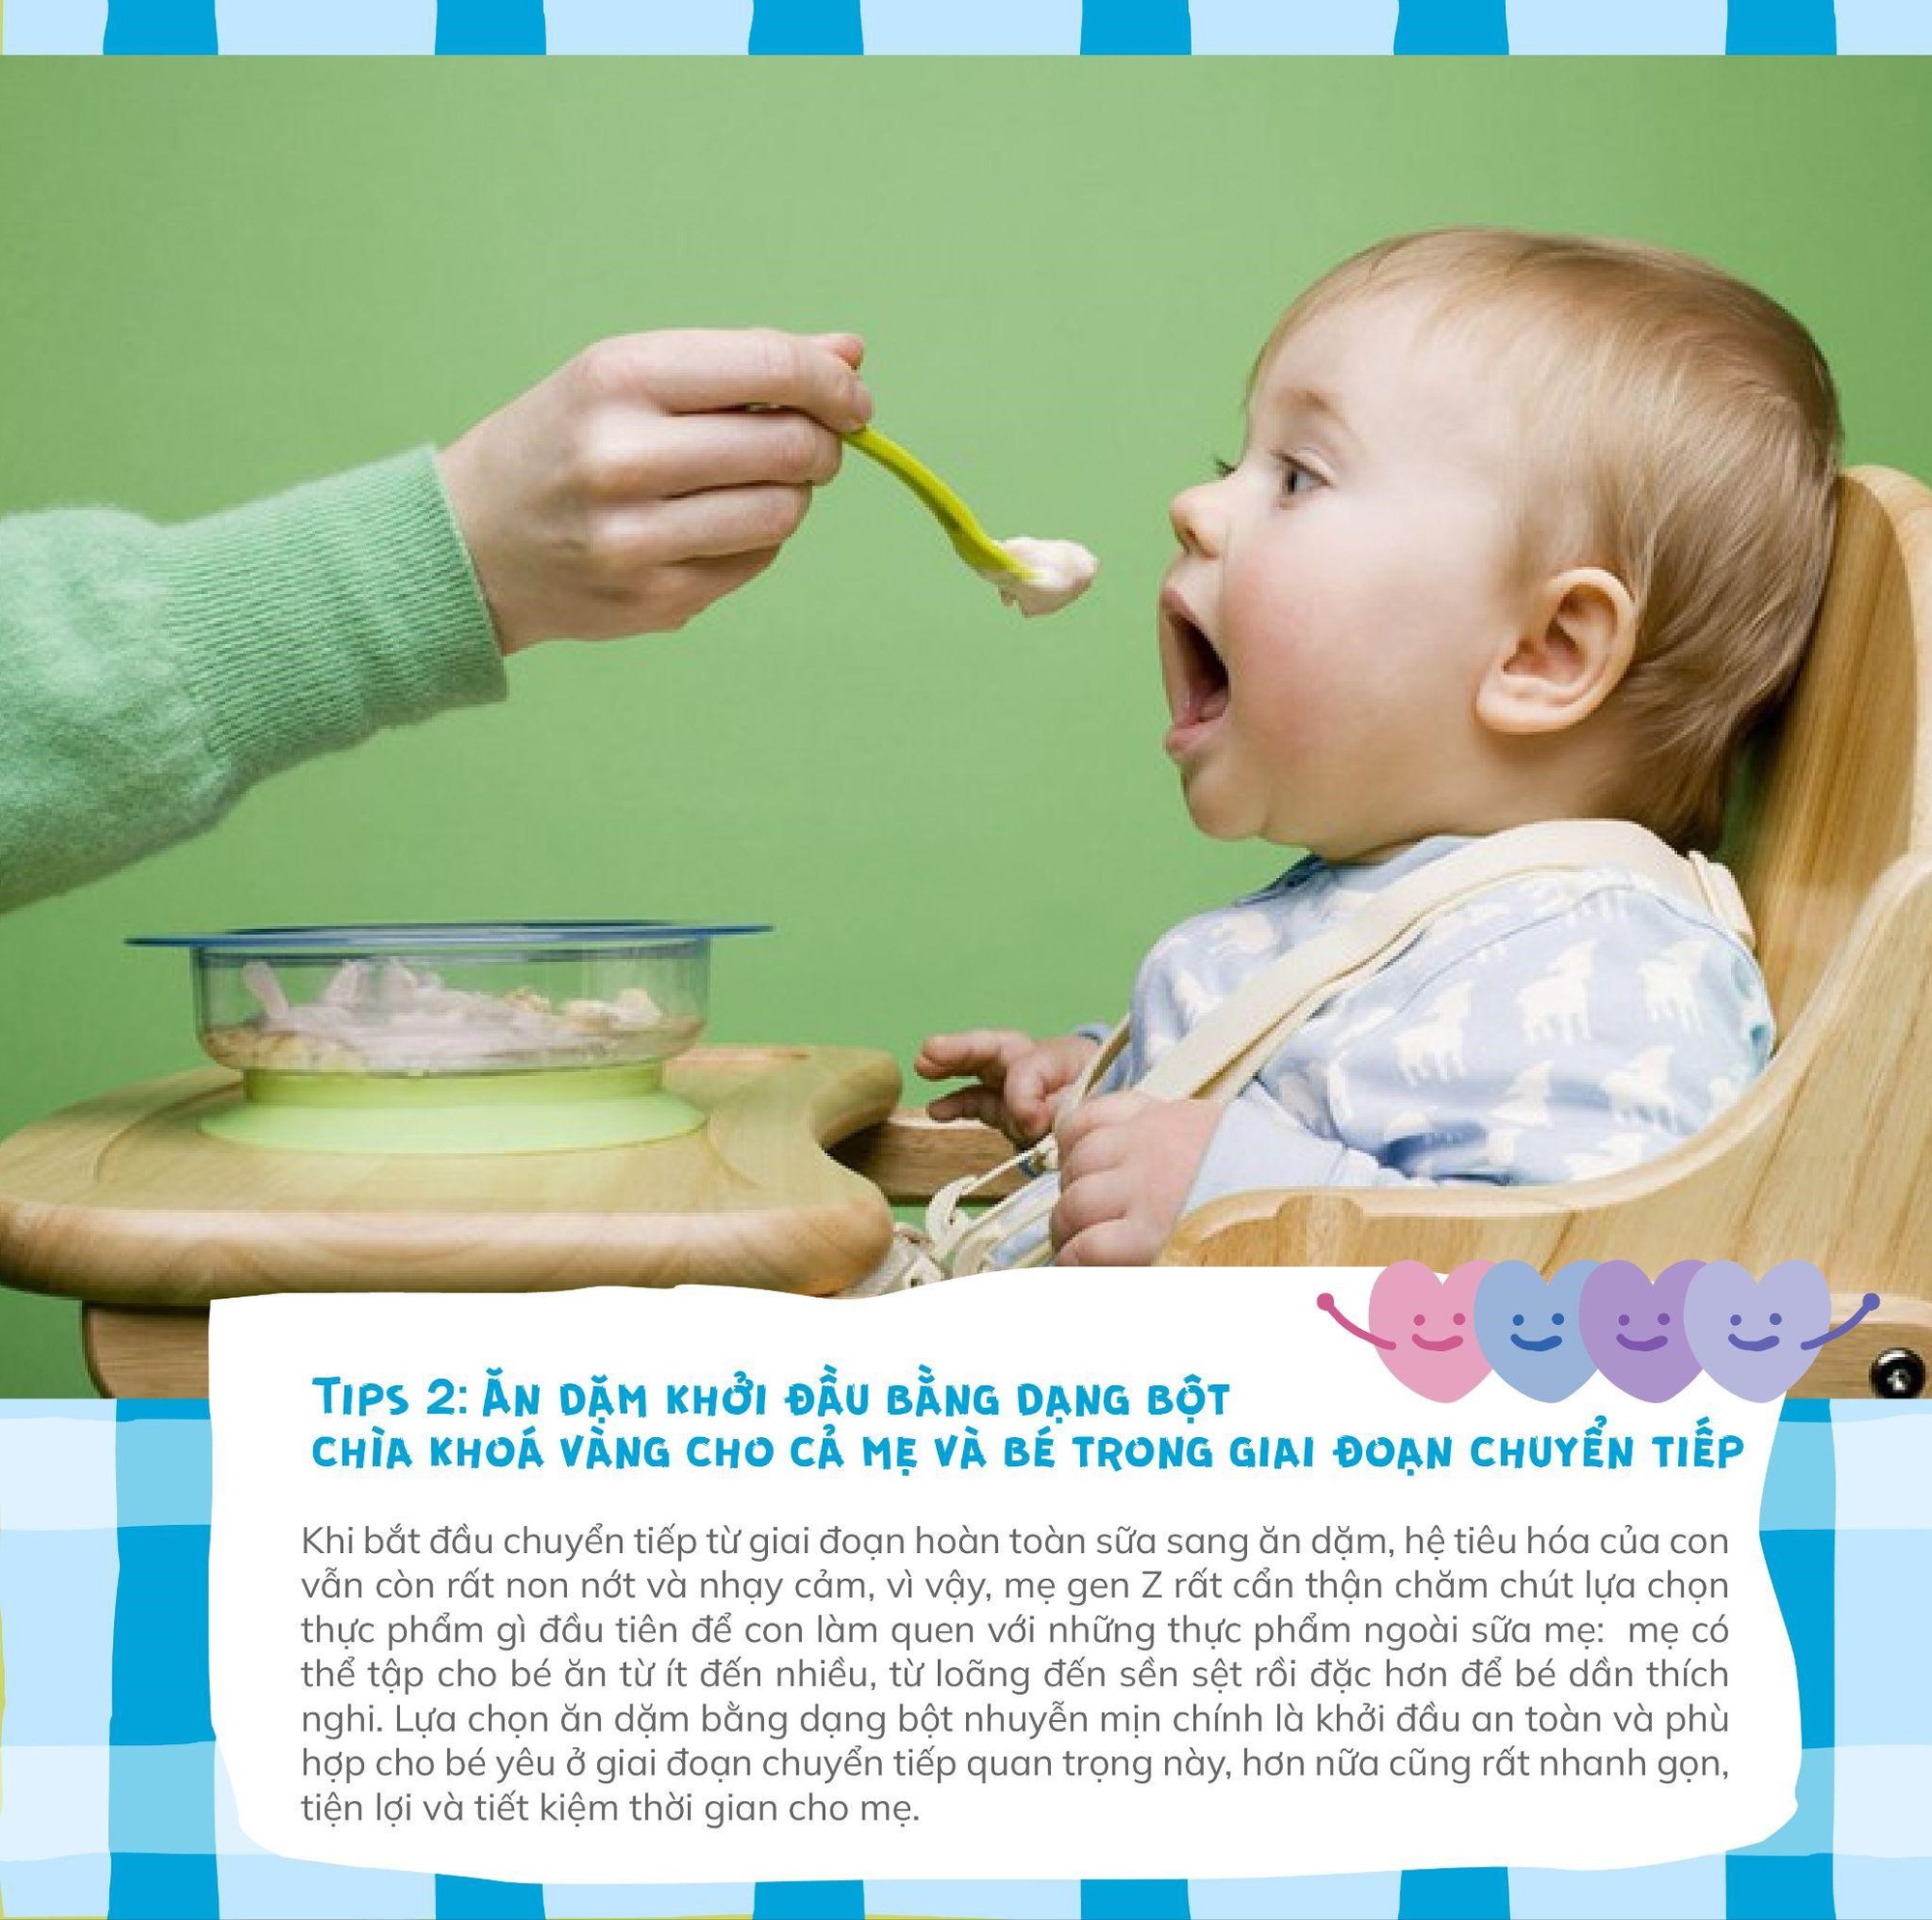 Mẹ “bỉm sữa” hiện đại bật mí bí kíp cực hiệu quả khi cho bé ăn dặm - Ảnh 2.